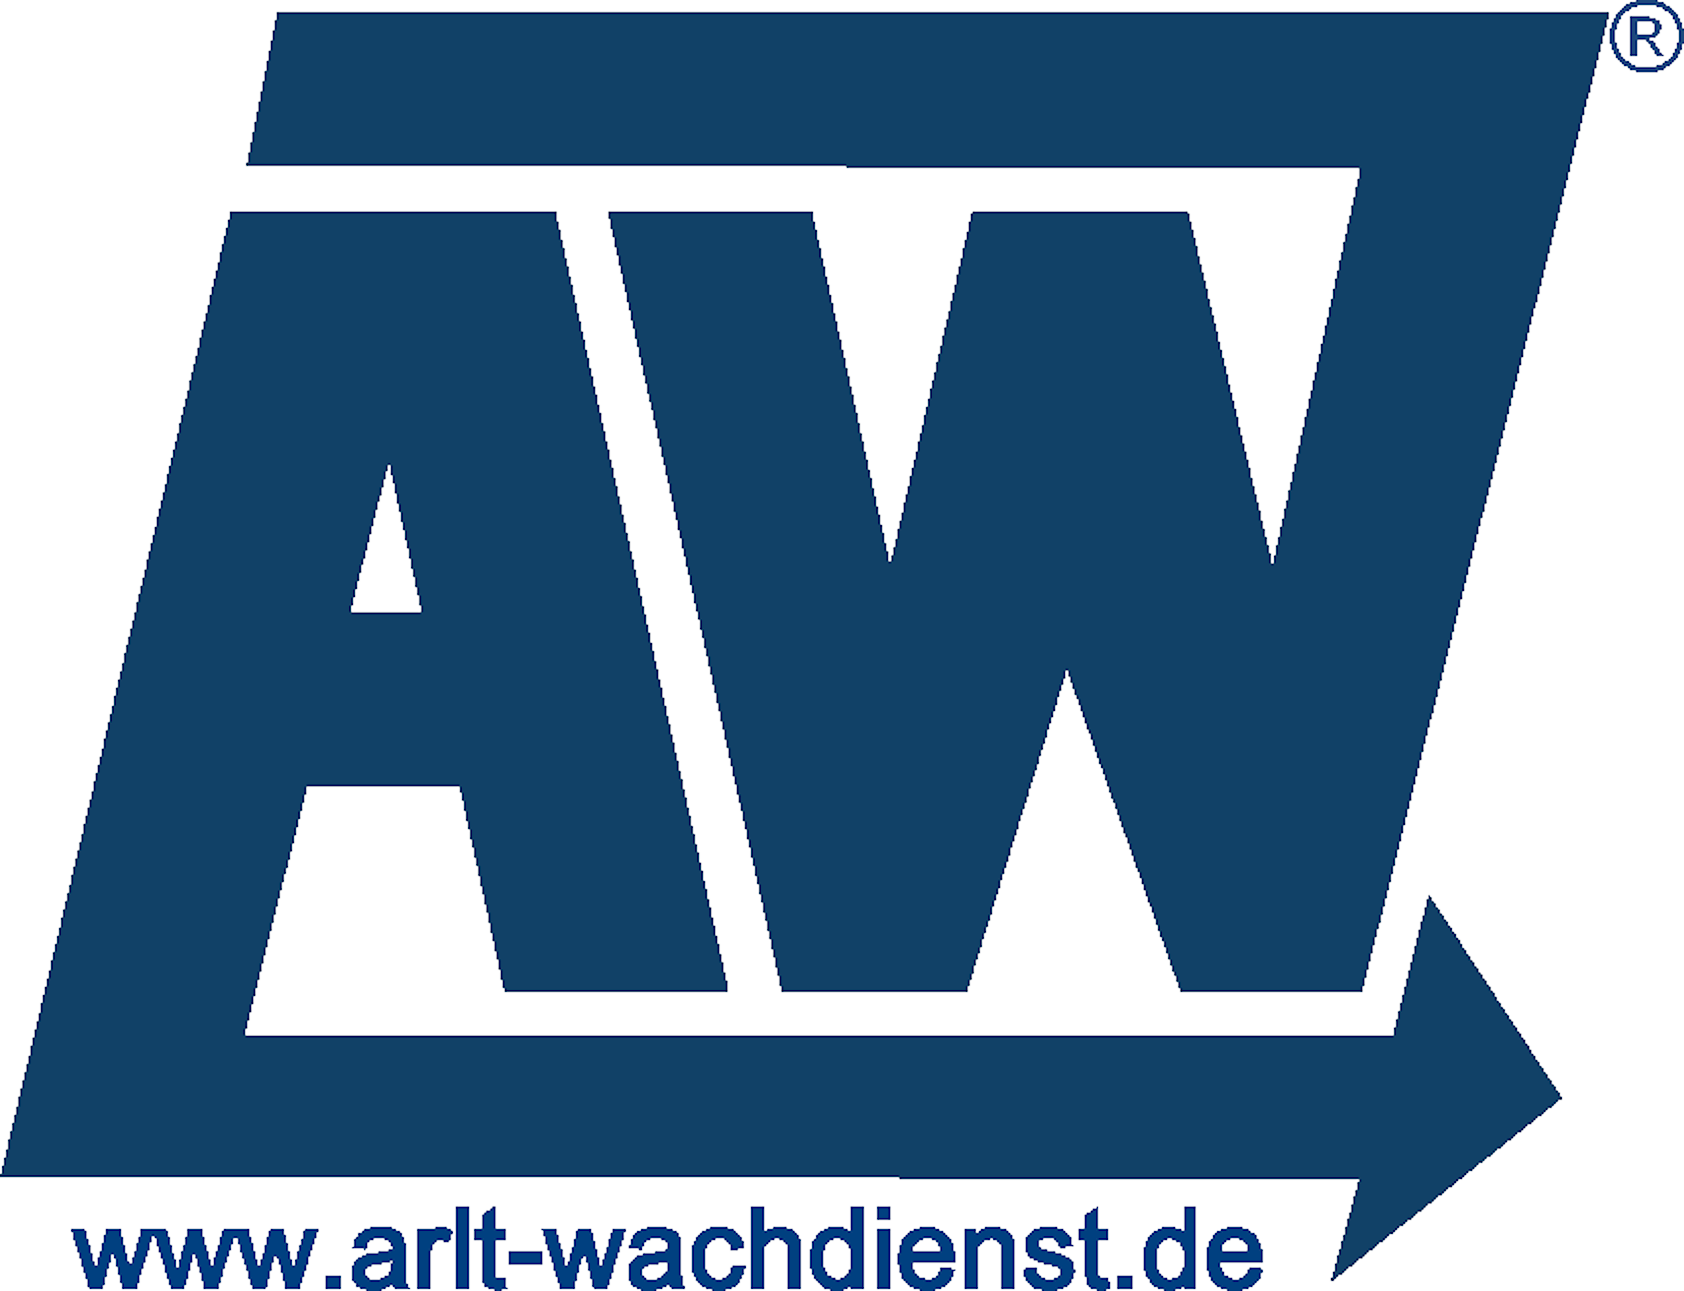 ARLT Wach-, Schließ- und Schutzdienst GmbH